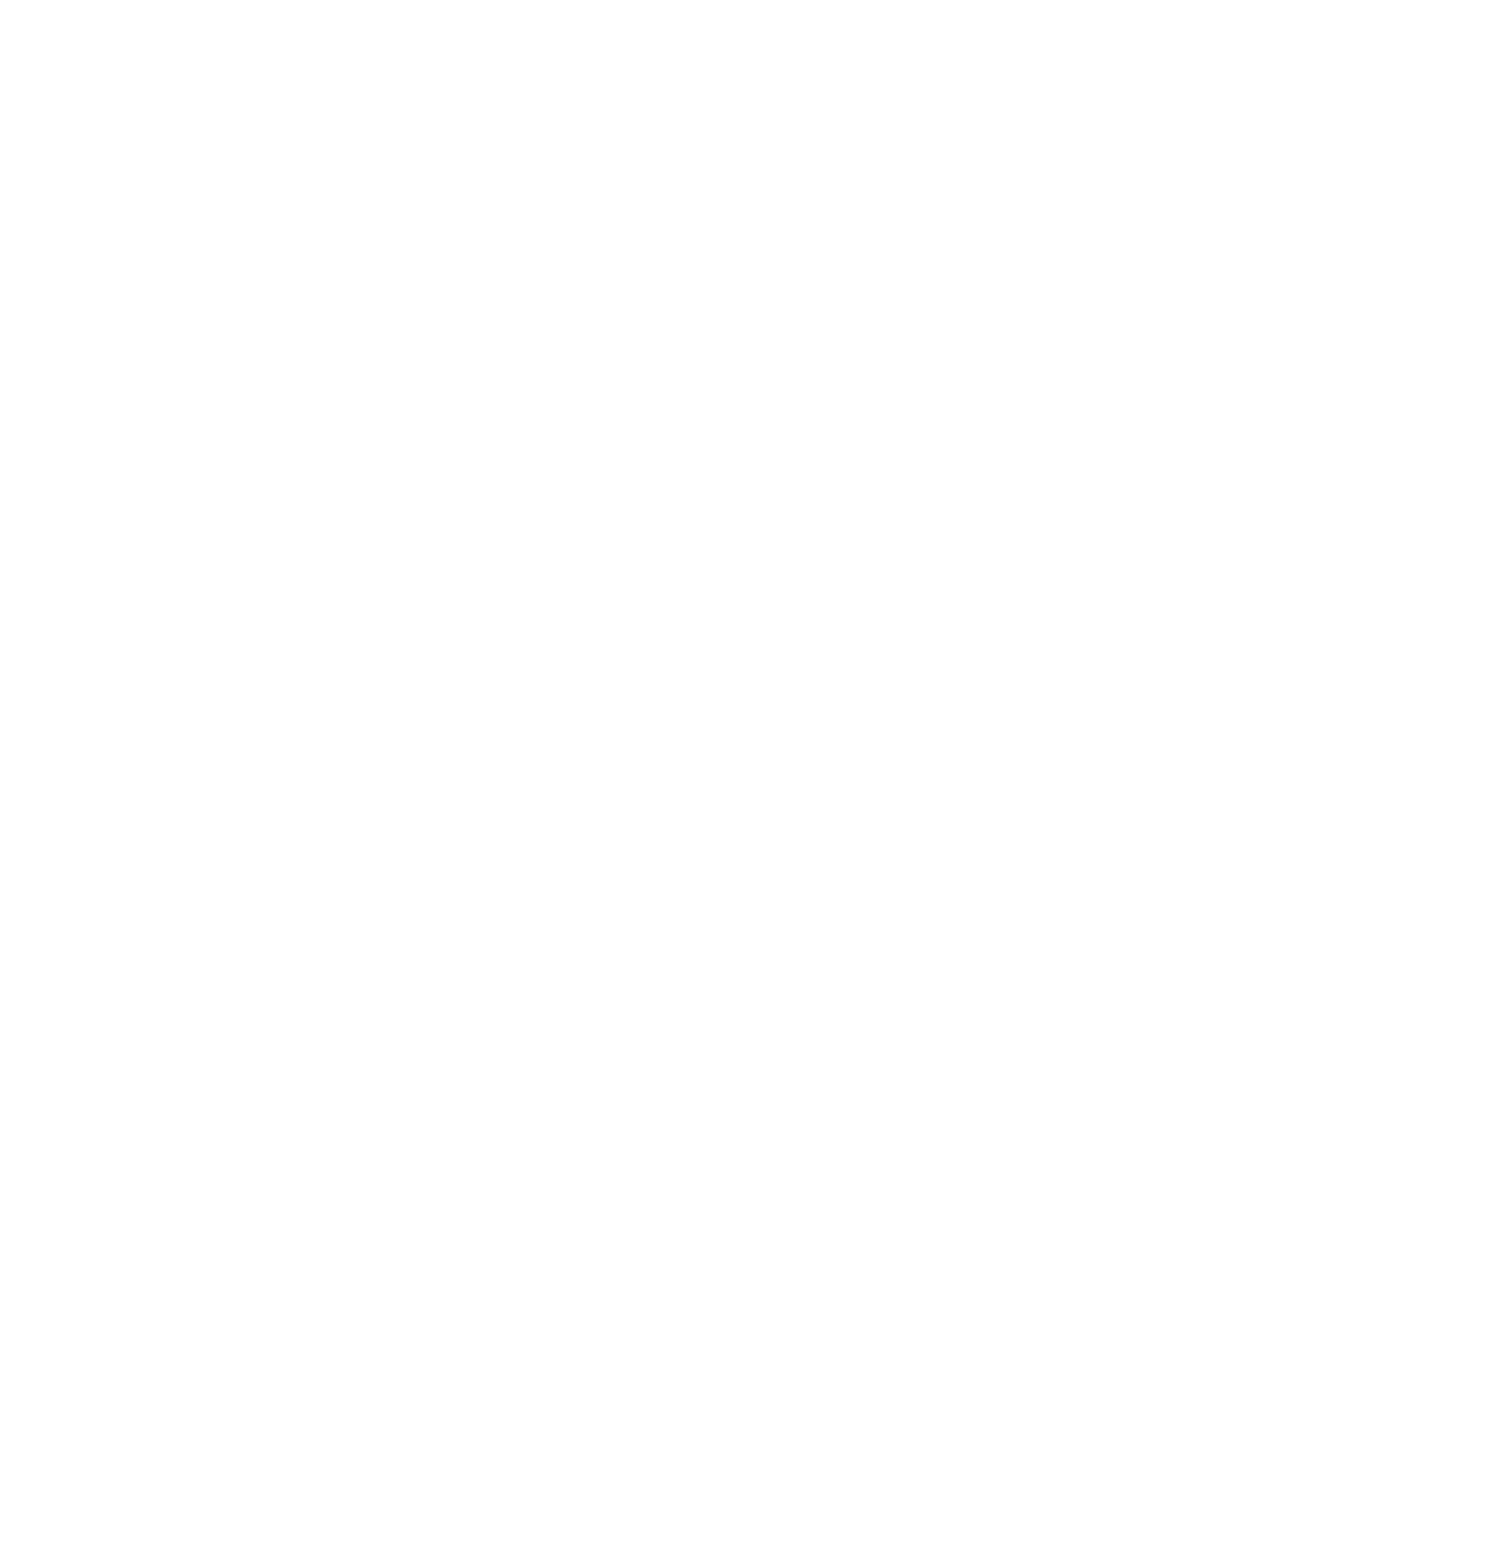 Grove Collaborative logo pour fonds sombres (PNG transparent)